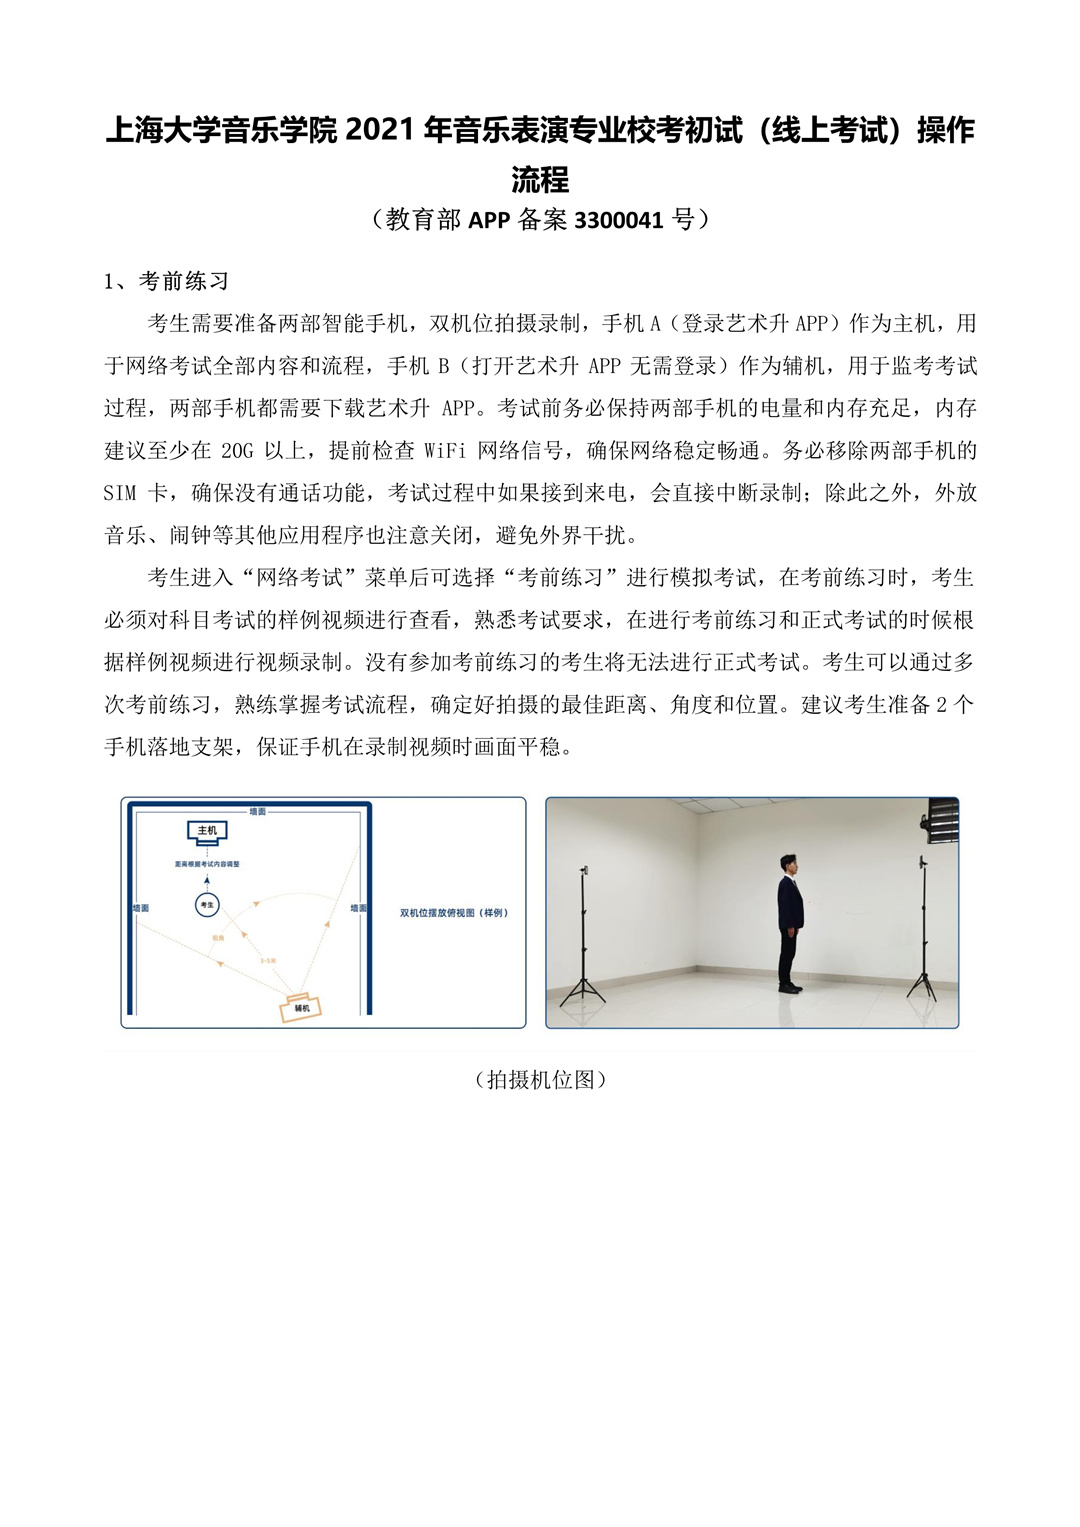 2021年上海大学音乐学院音乐表演专业校考初试（线上考试）操作流程